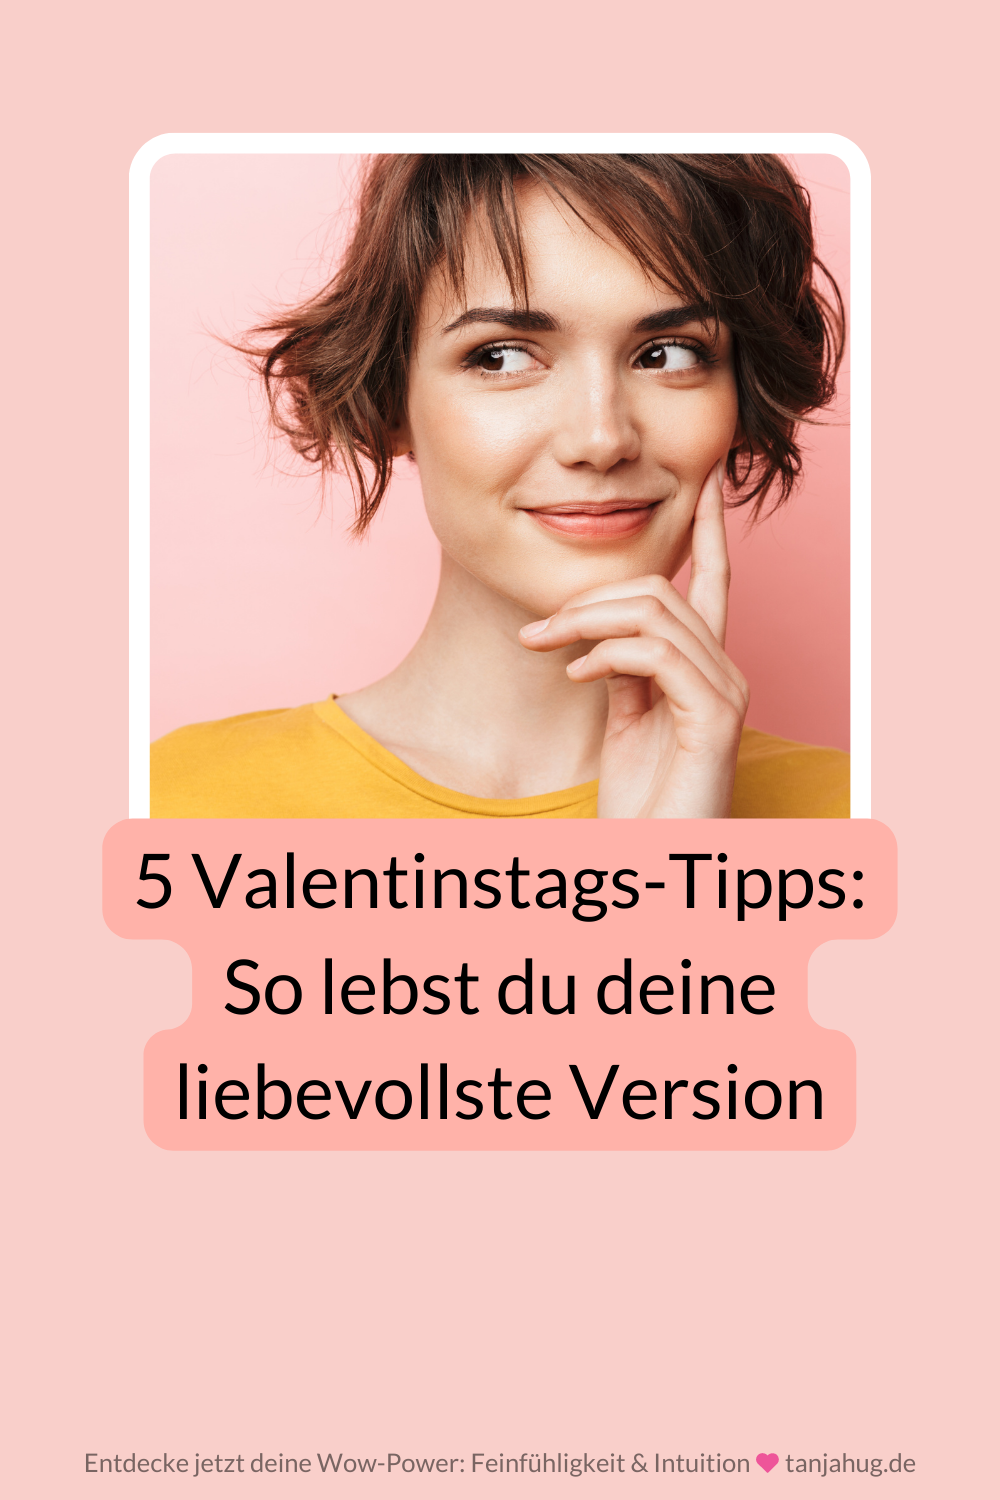 5 Tipps für mehr Selbstliebe am Valentinstag - lebe deine liebevollste Version